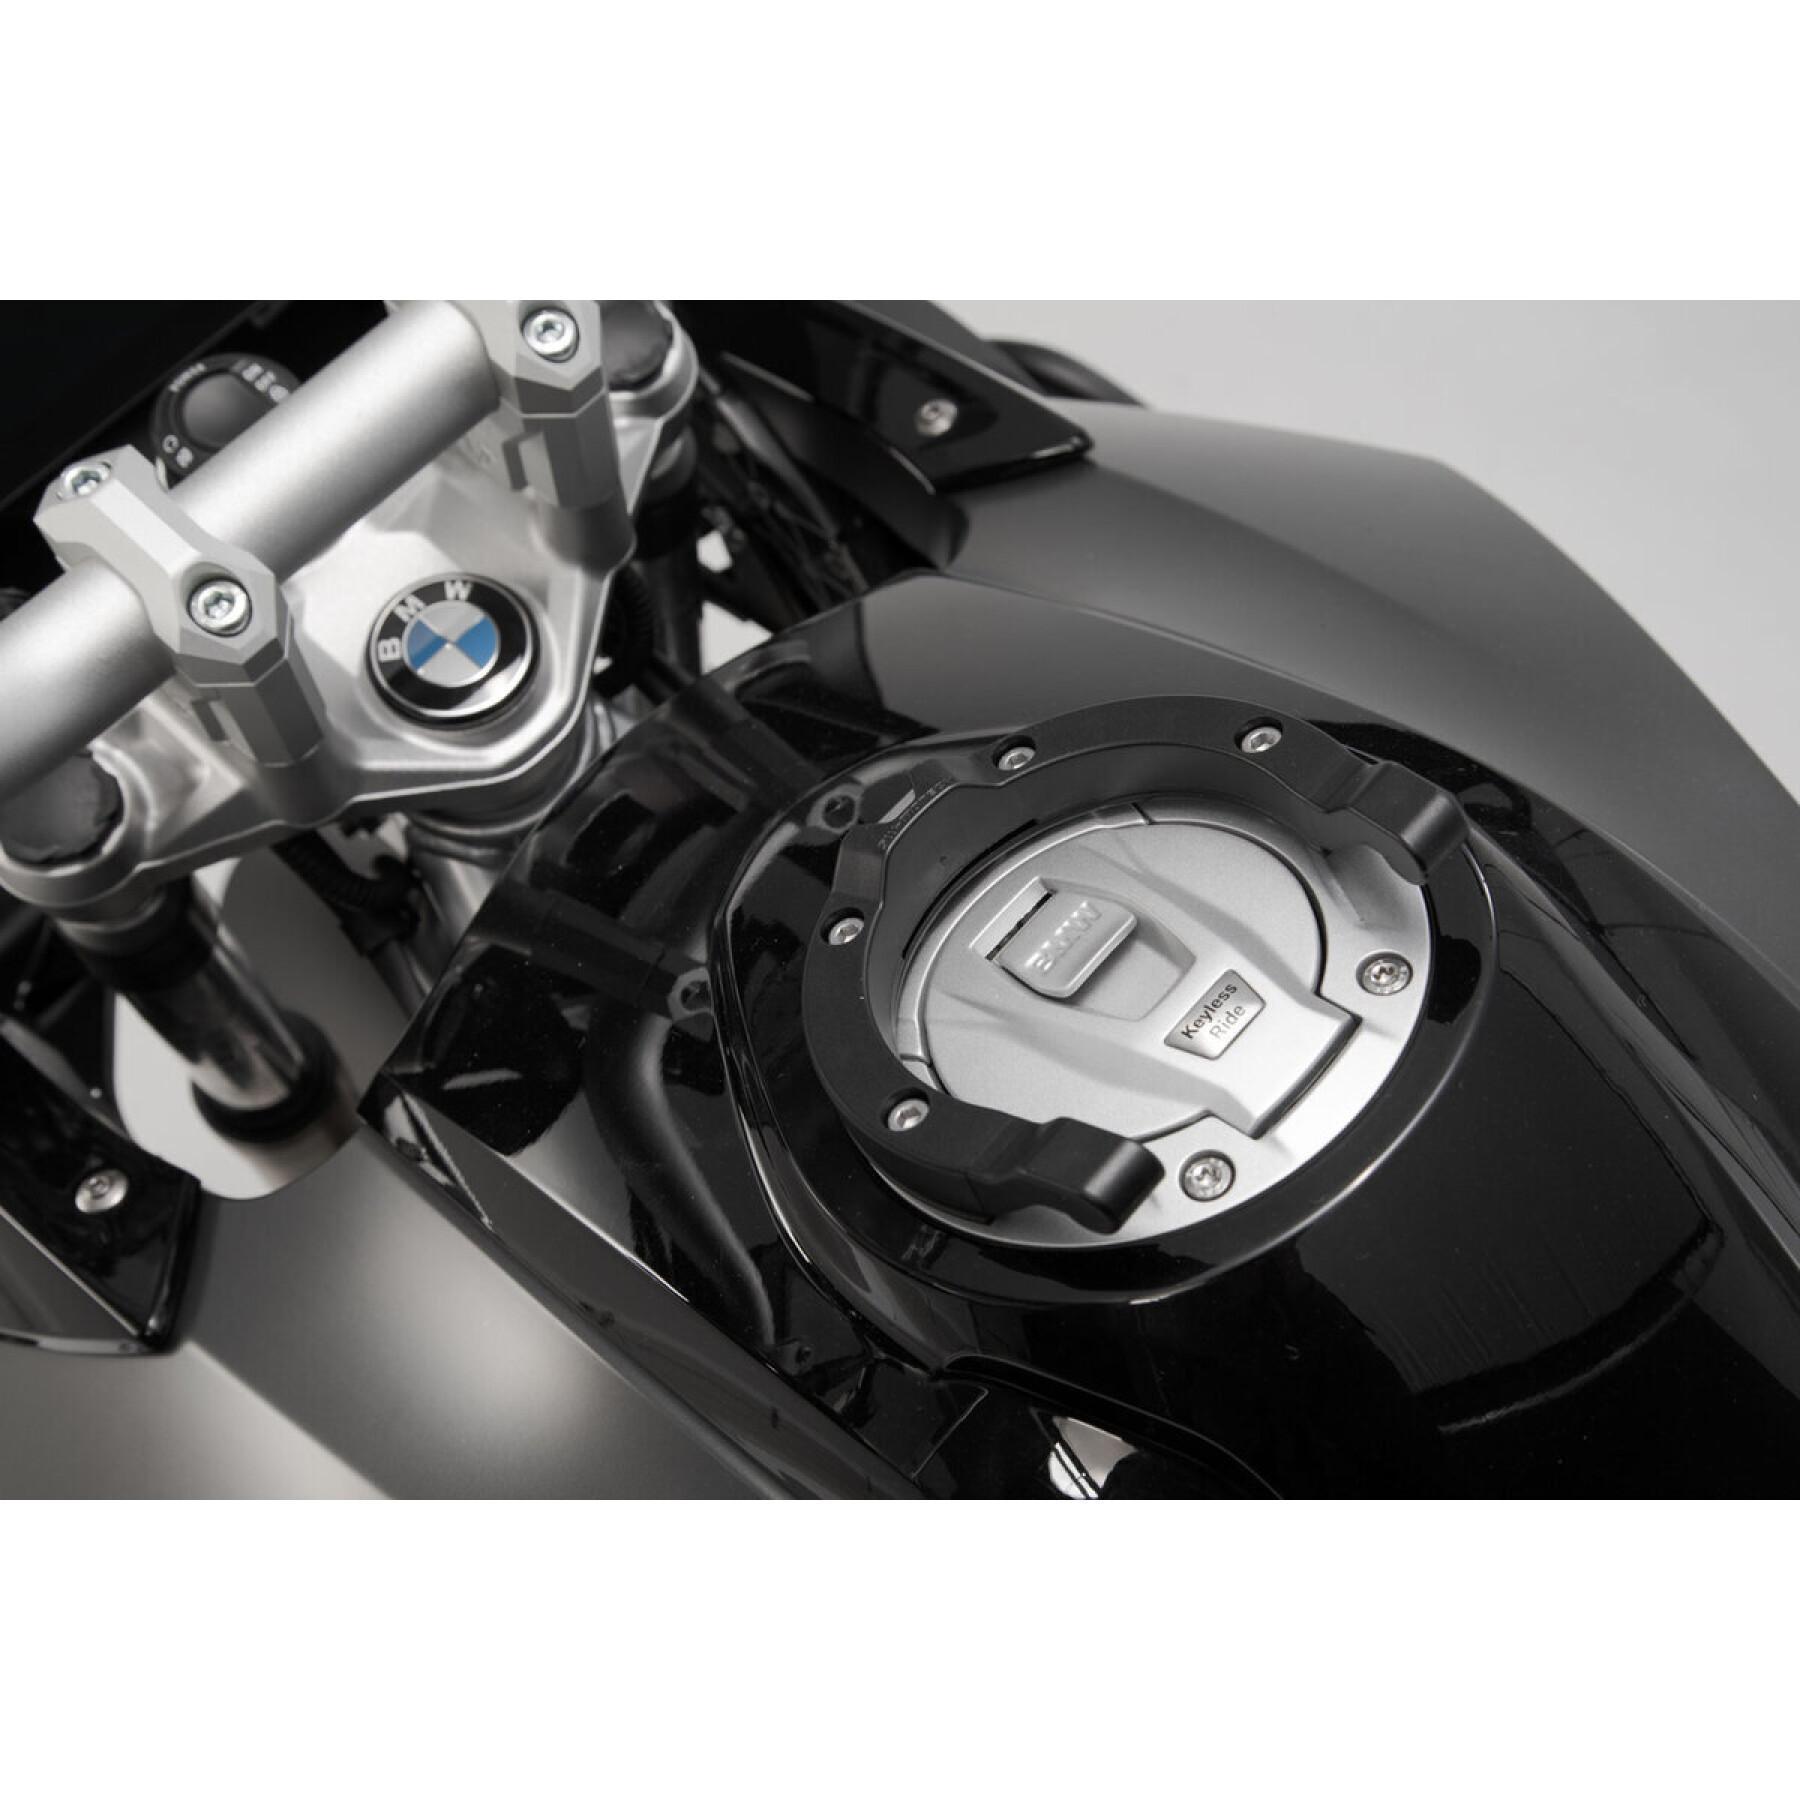 Anneau de réservoir SW-Motech Ion BMW / Ducati / KTM / Triumph